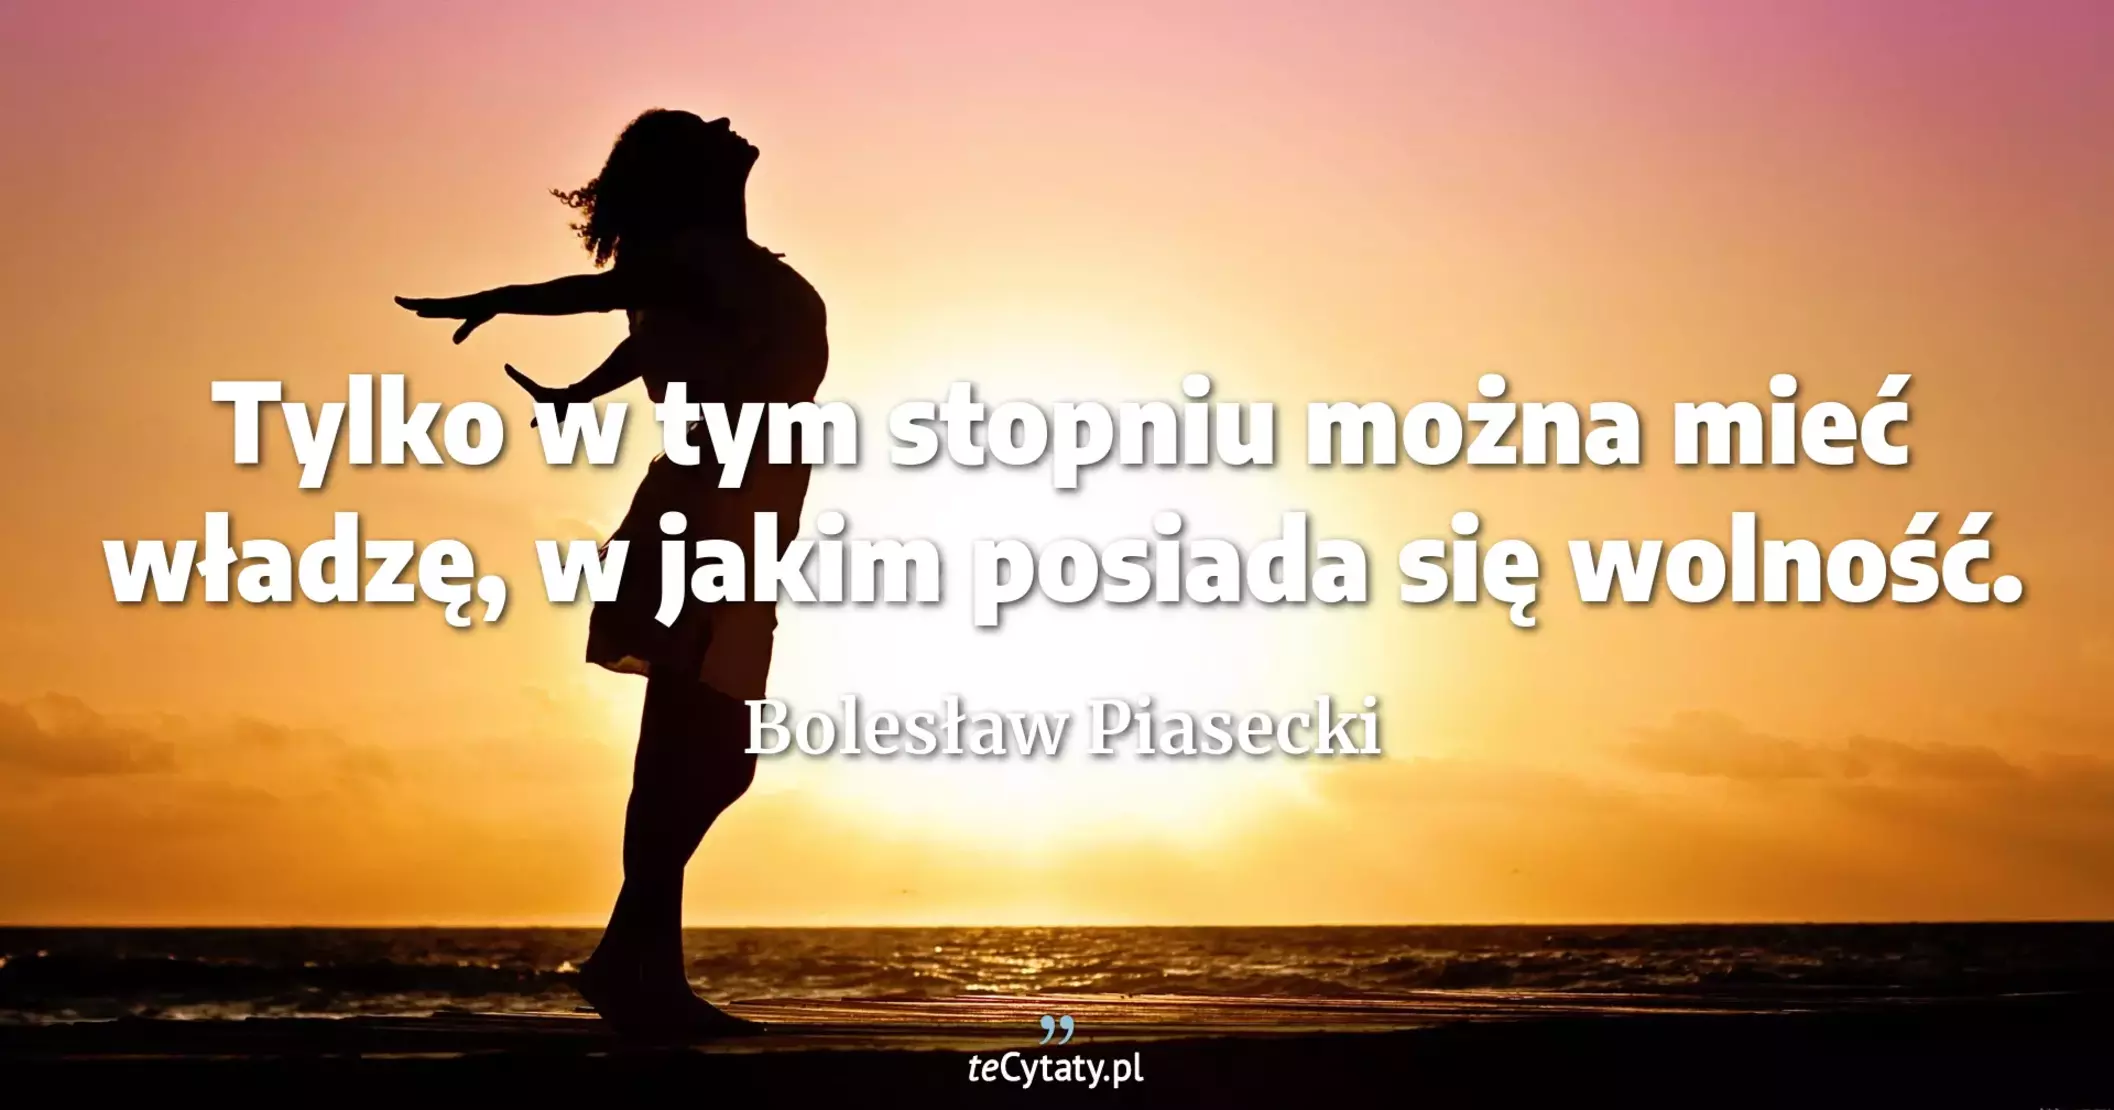 Tylko w tym stopniu można mieć władzę, w jakim posiada się wolność. - Bolesław Piasecki